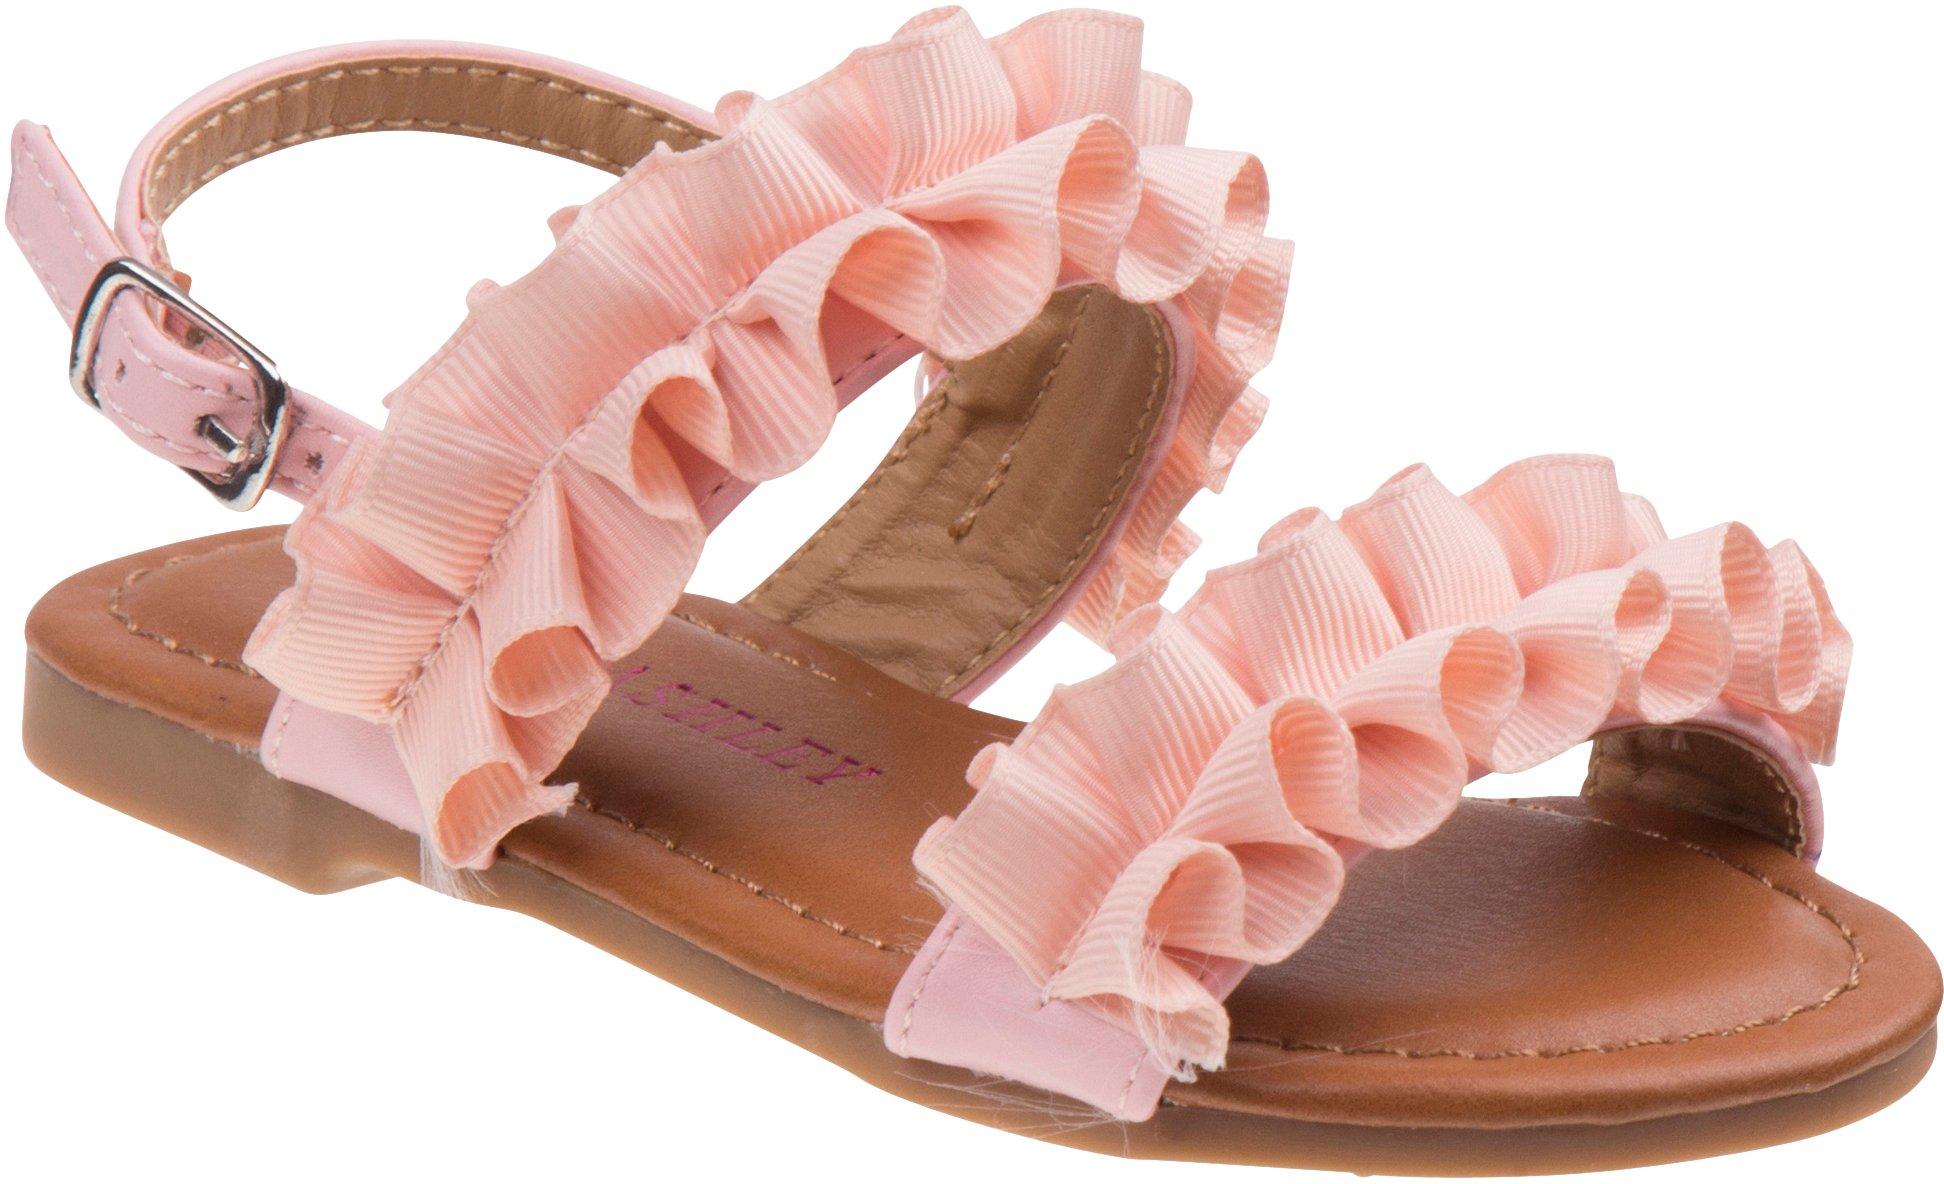 Toddler Girls Ruffle Sandals